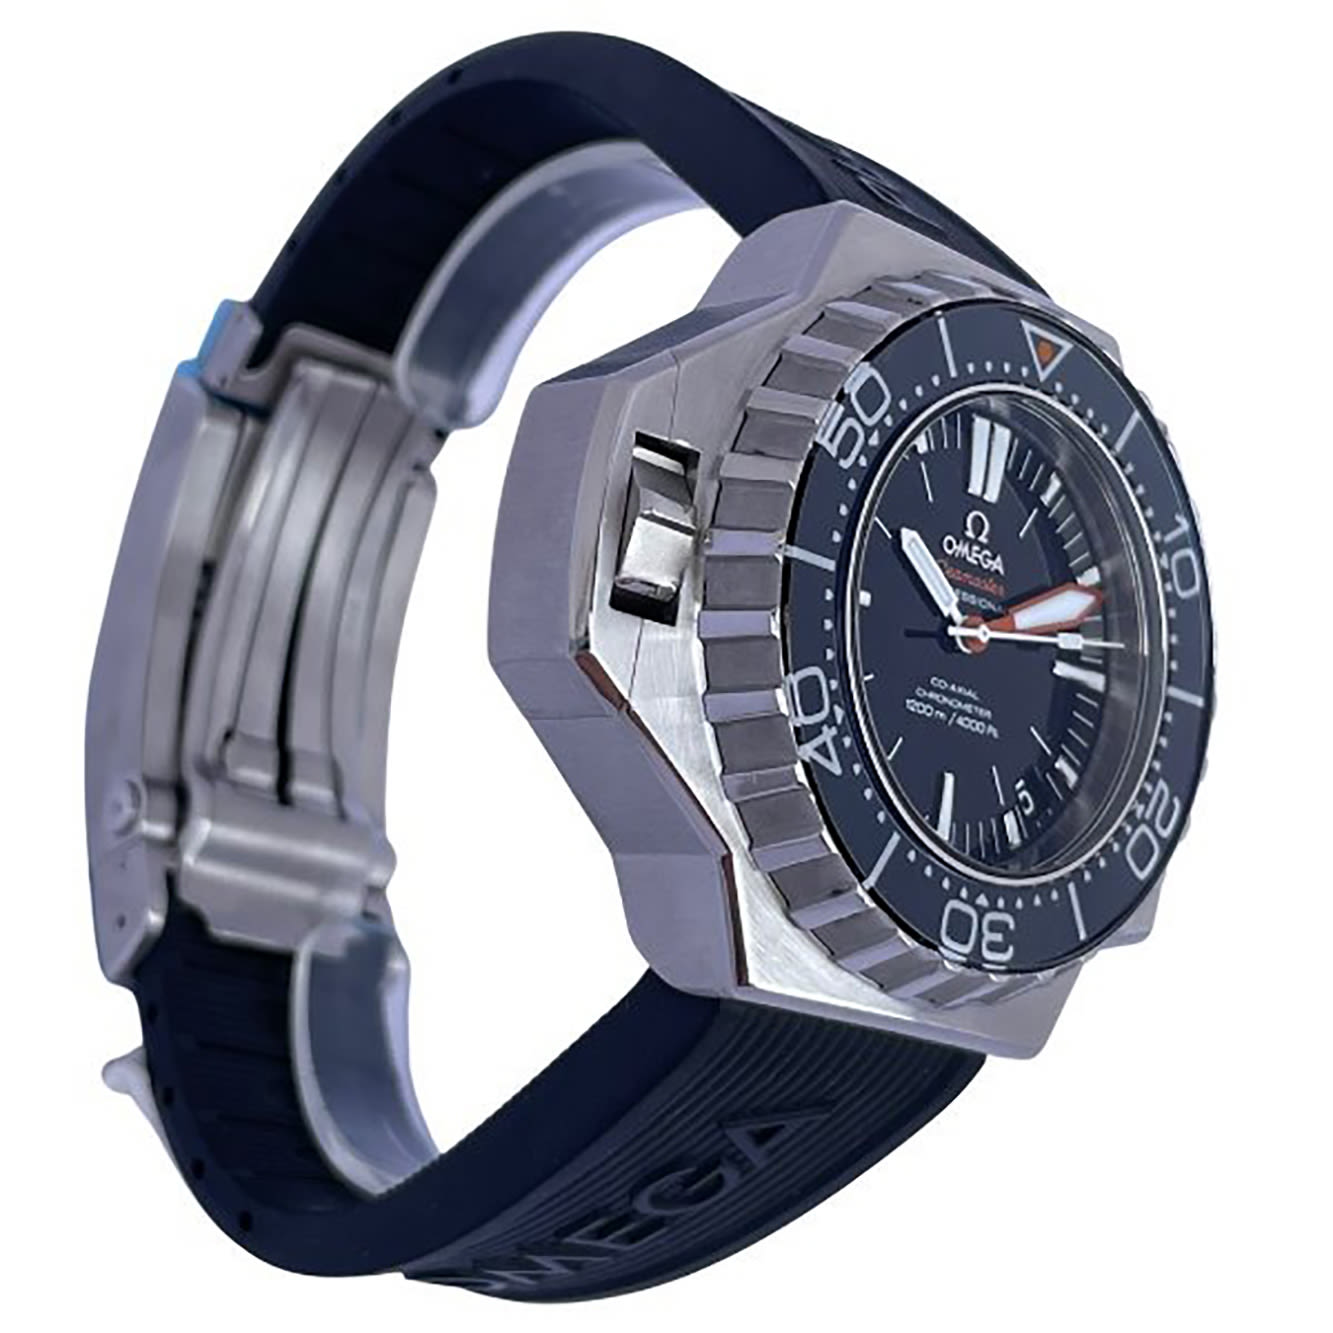 Omega Seamaster Ploprof wristwatch - Image 2 of 6